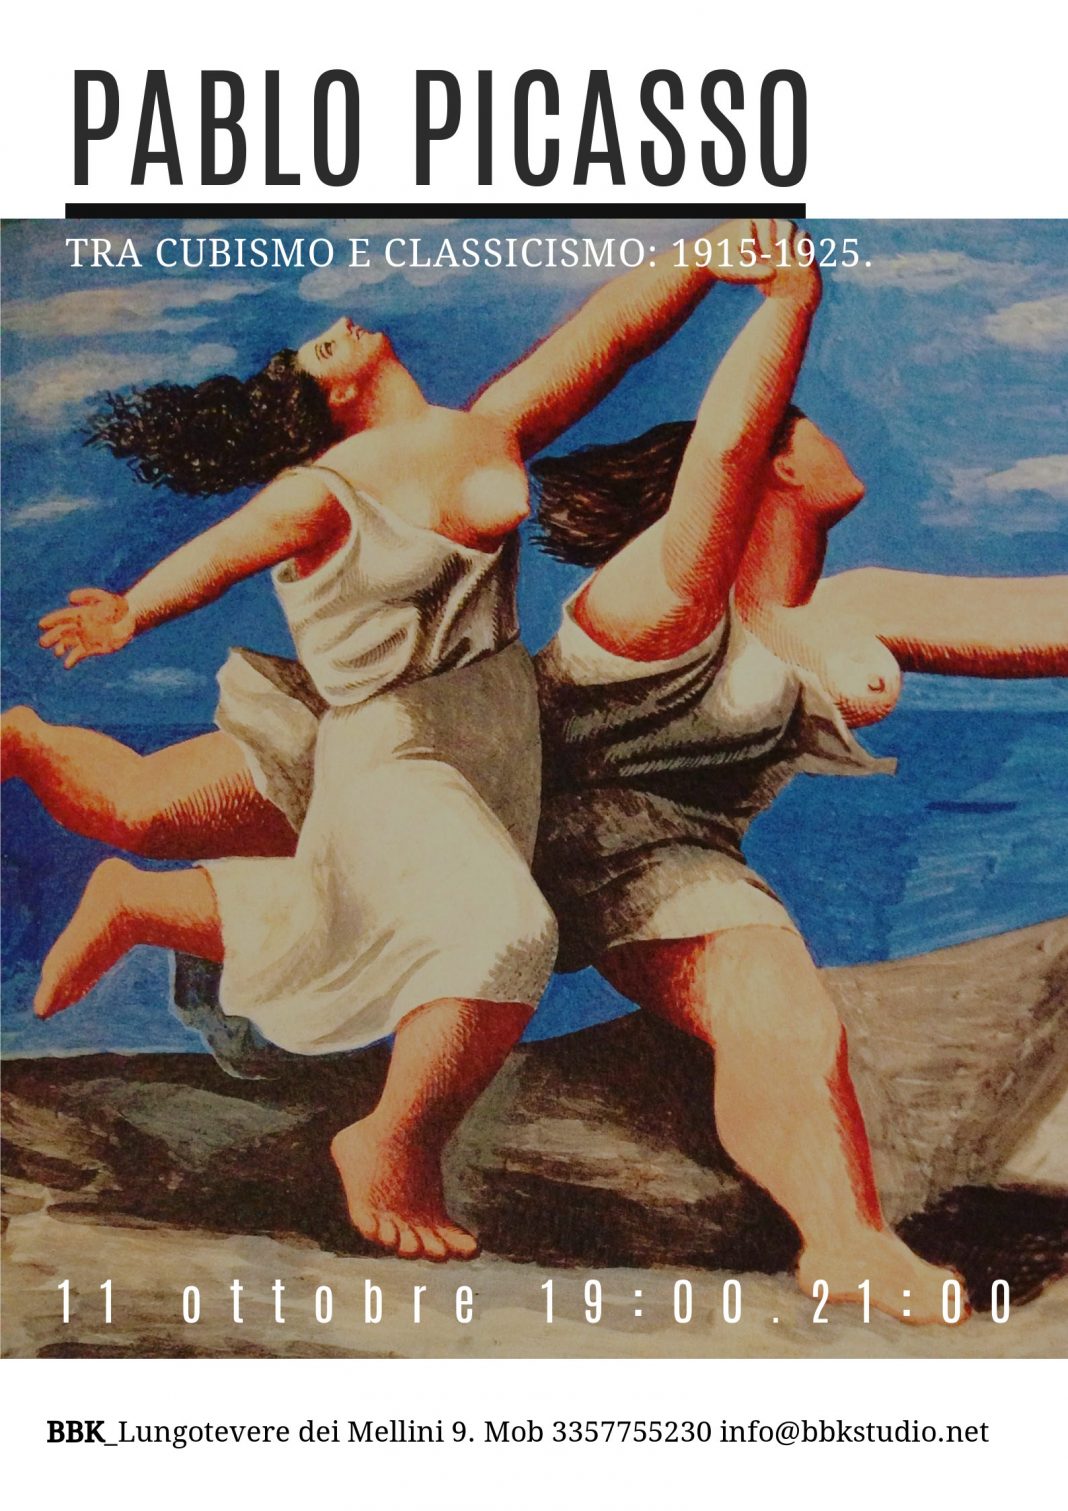 Picasso. Tra Cubismo e Classicismo: 1915-1925https://www.exibart.com/repository/media/eventi/2017/09/picasso.-tra-cubismo-e-classicismo-1915-1925-1068x1511.jpg